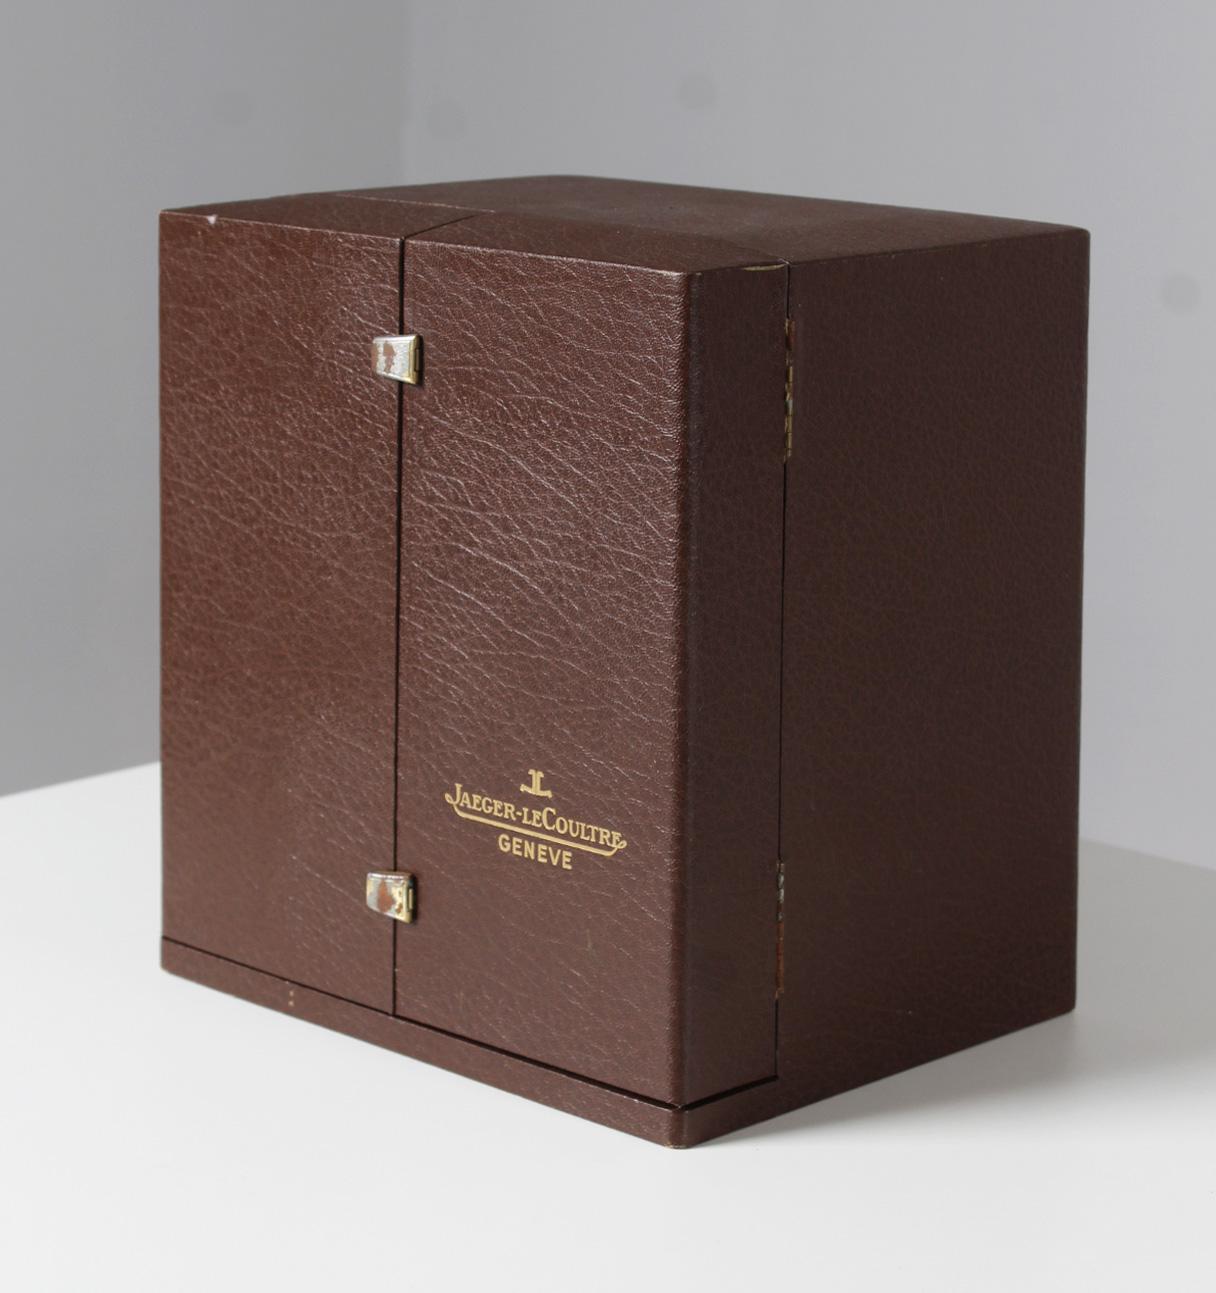 Fin du 20e siècle Jaeger LeCoultre, Atmos Vendome, fabriqué en 1982, complet avec boîte et papiers